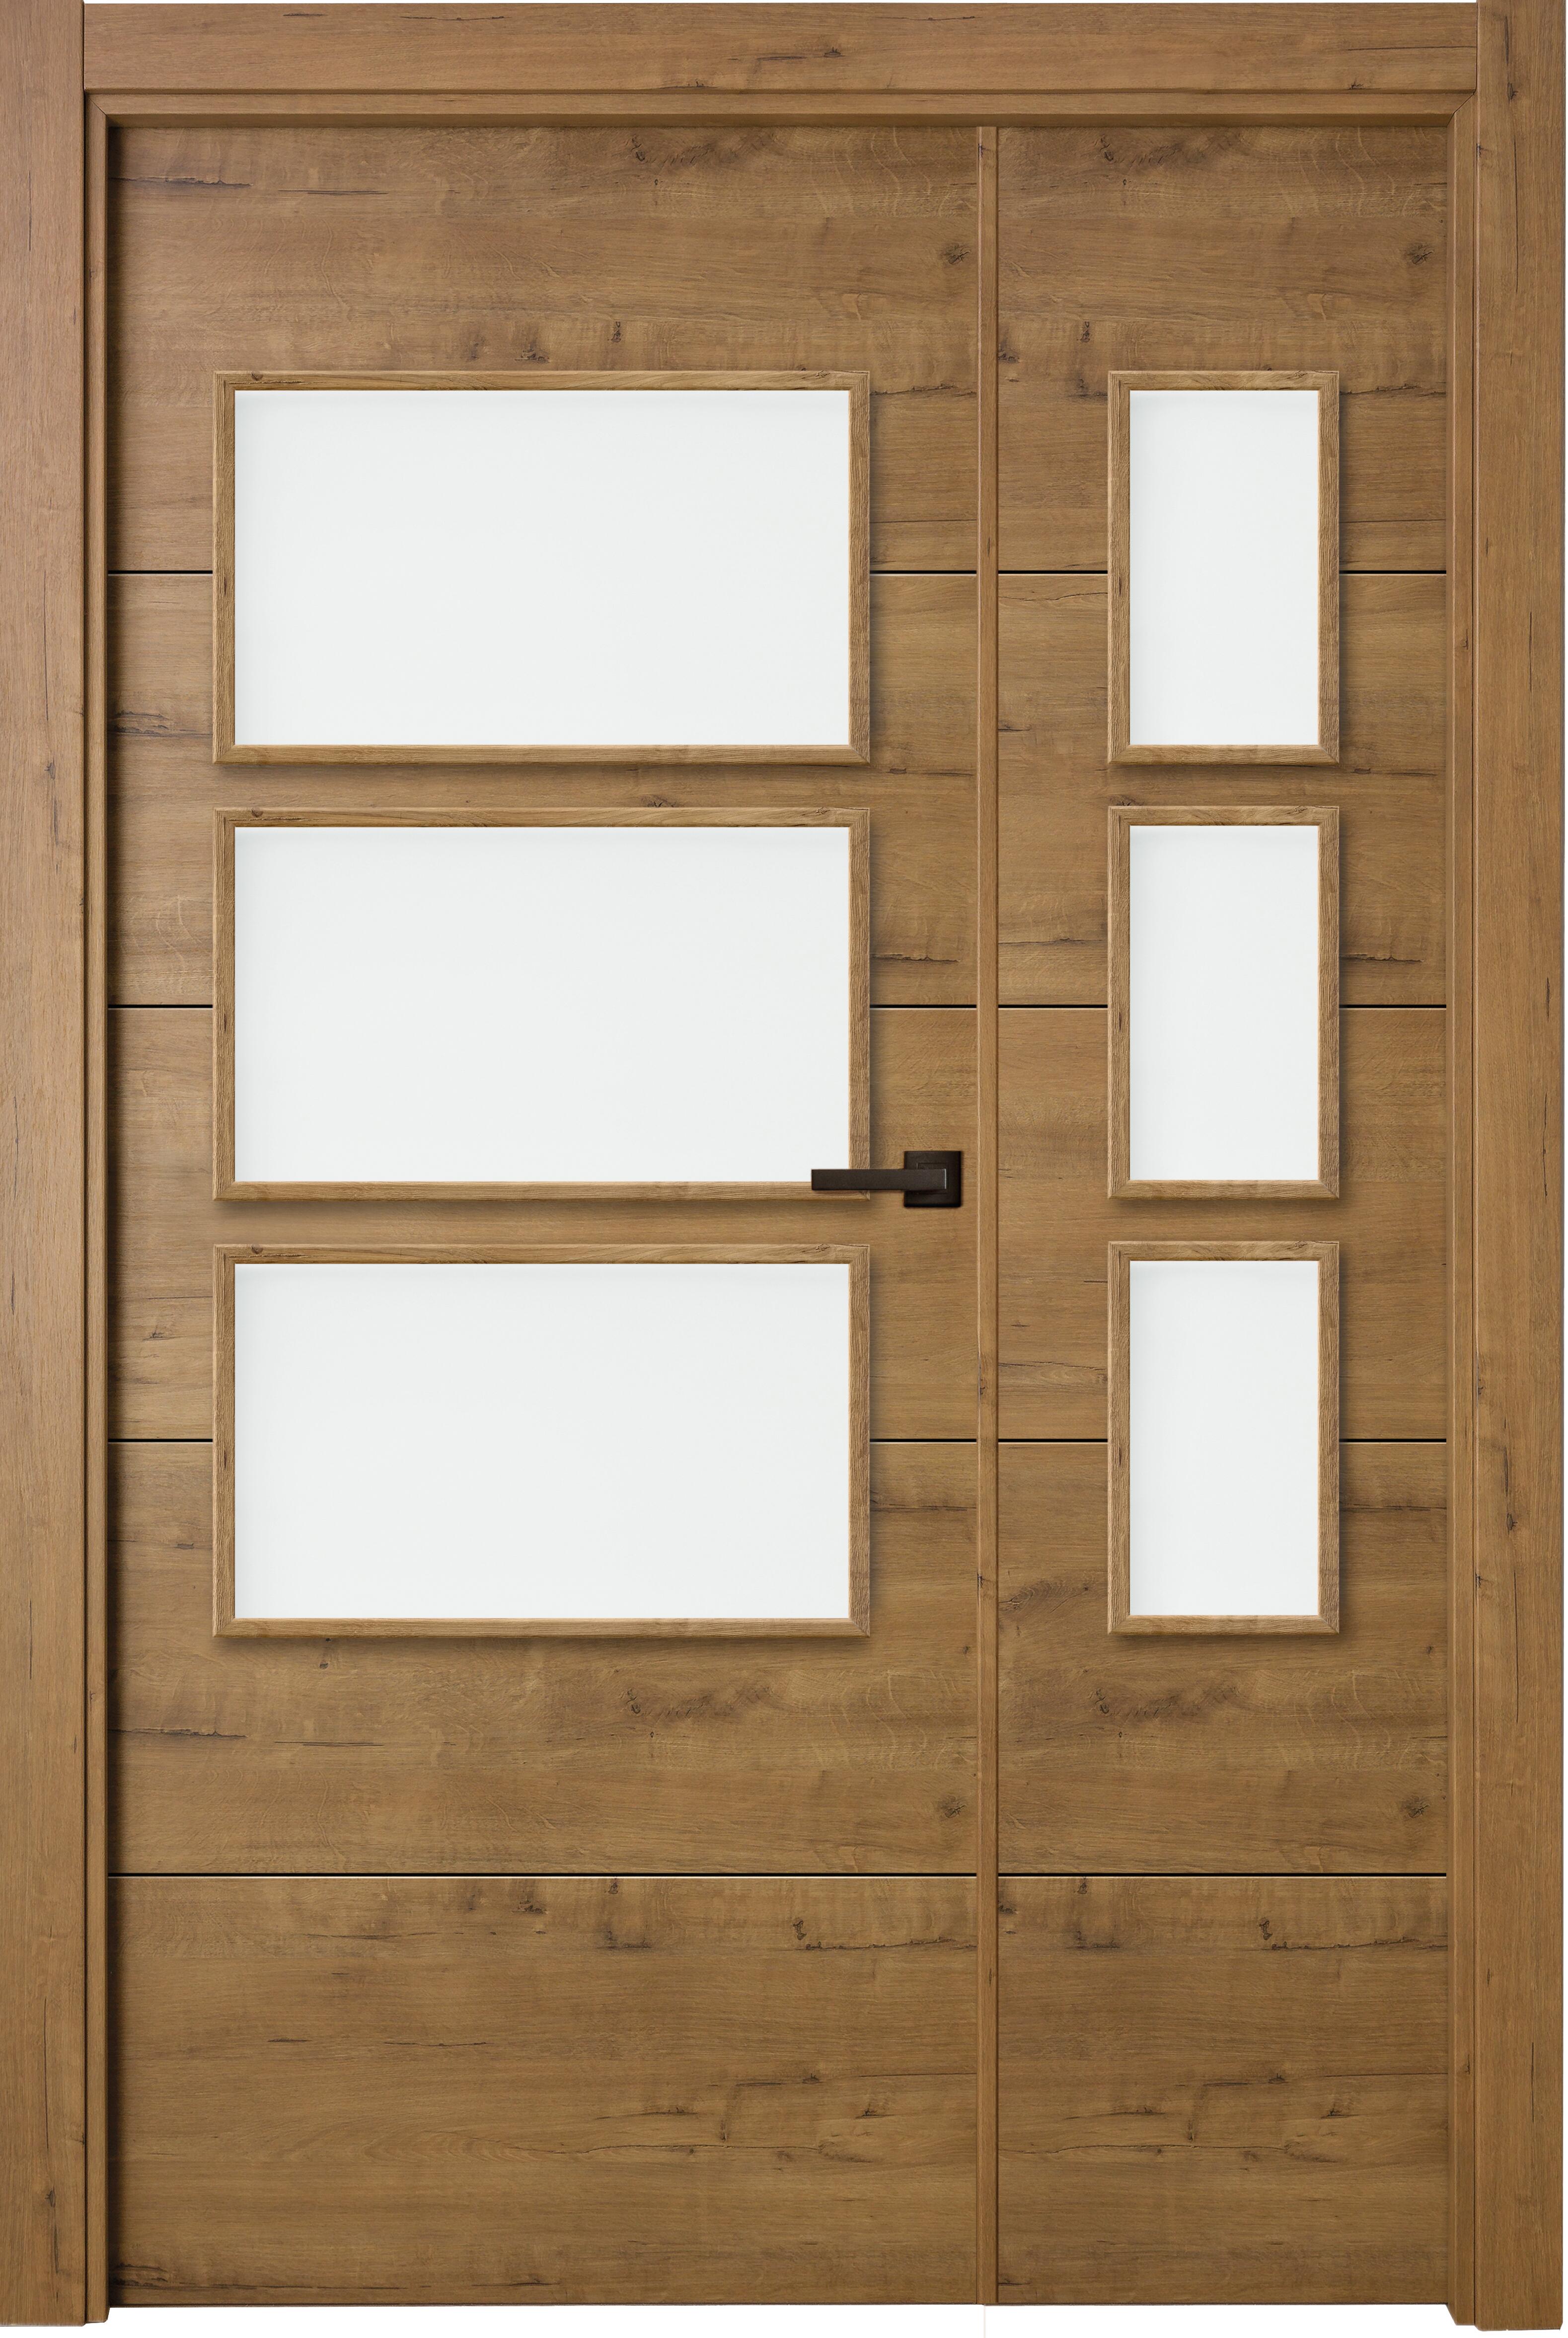 Puerta berna gold doble con vidriera de apertura derecha de 105 x 203 x 11 cm